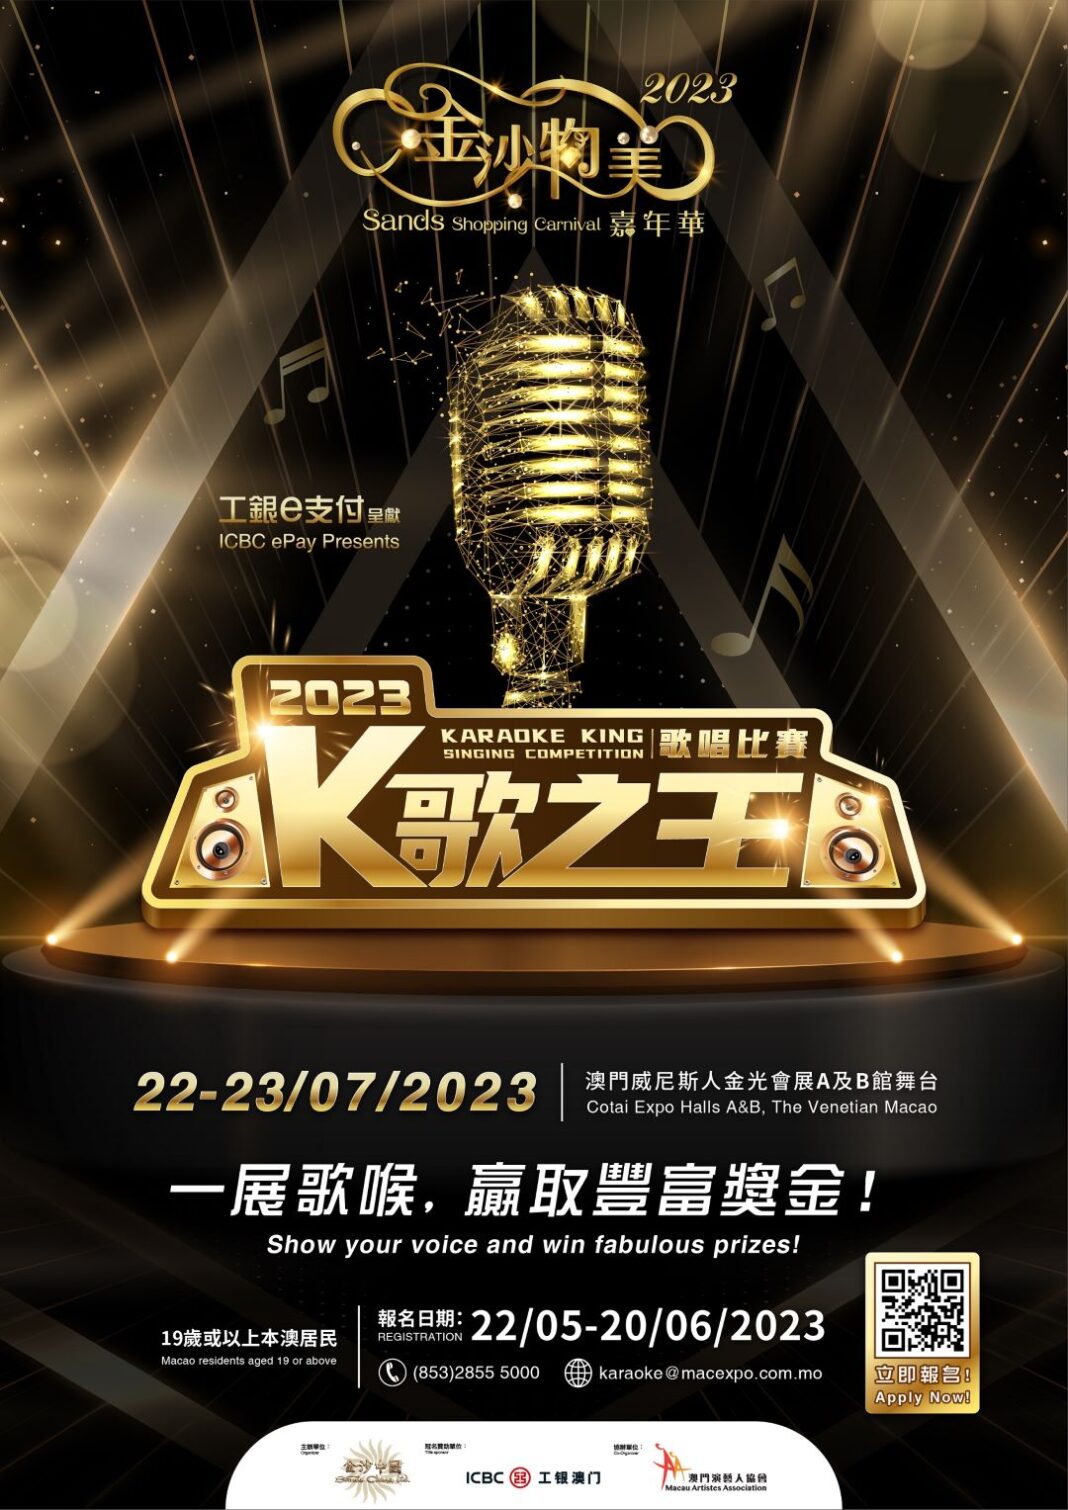 Karaoke King Singing Competition